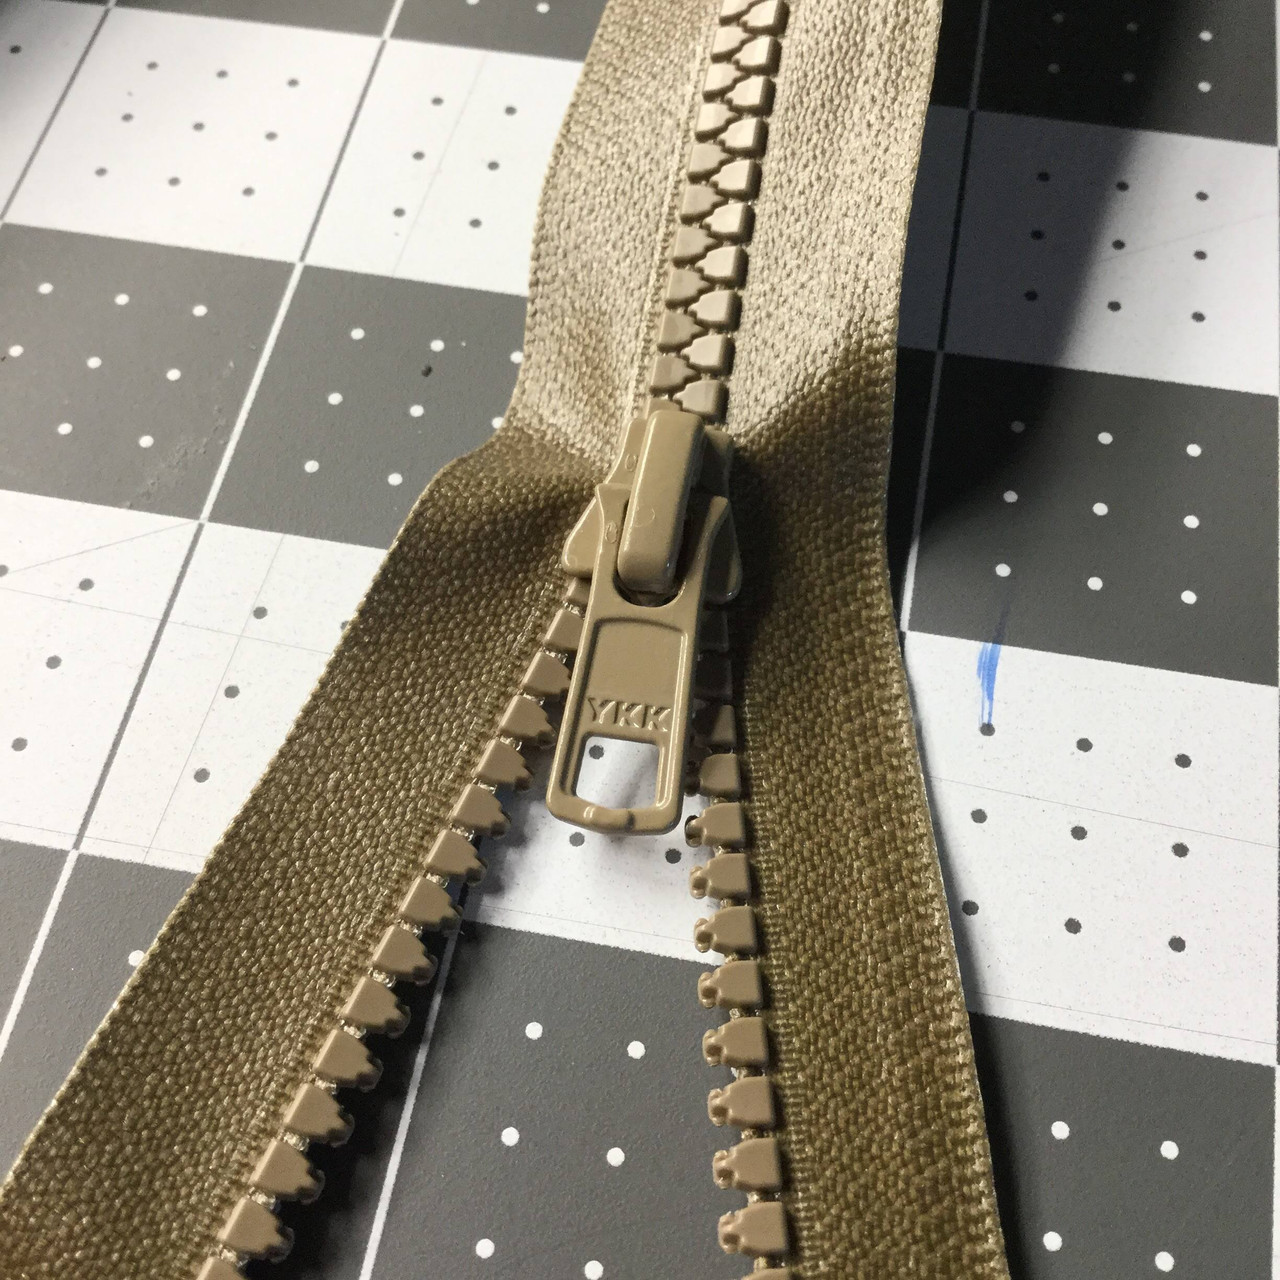 33.5 Molded Plastic Separating Zipper | Tan | Jacket Zipper